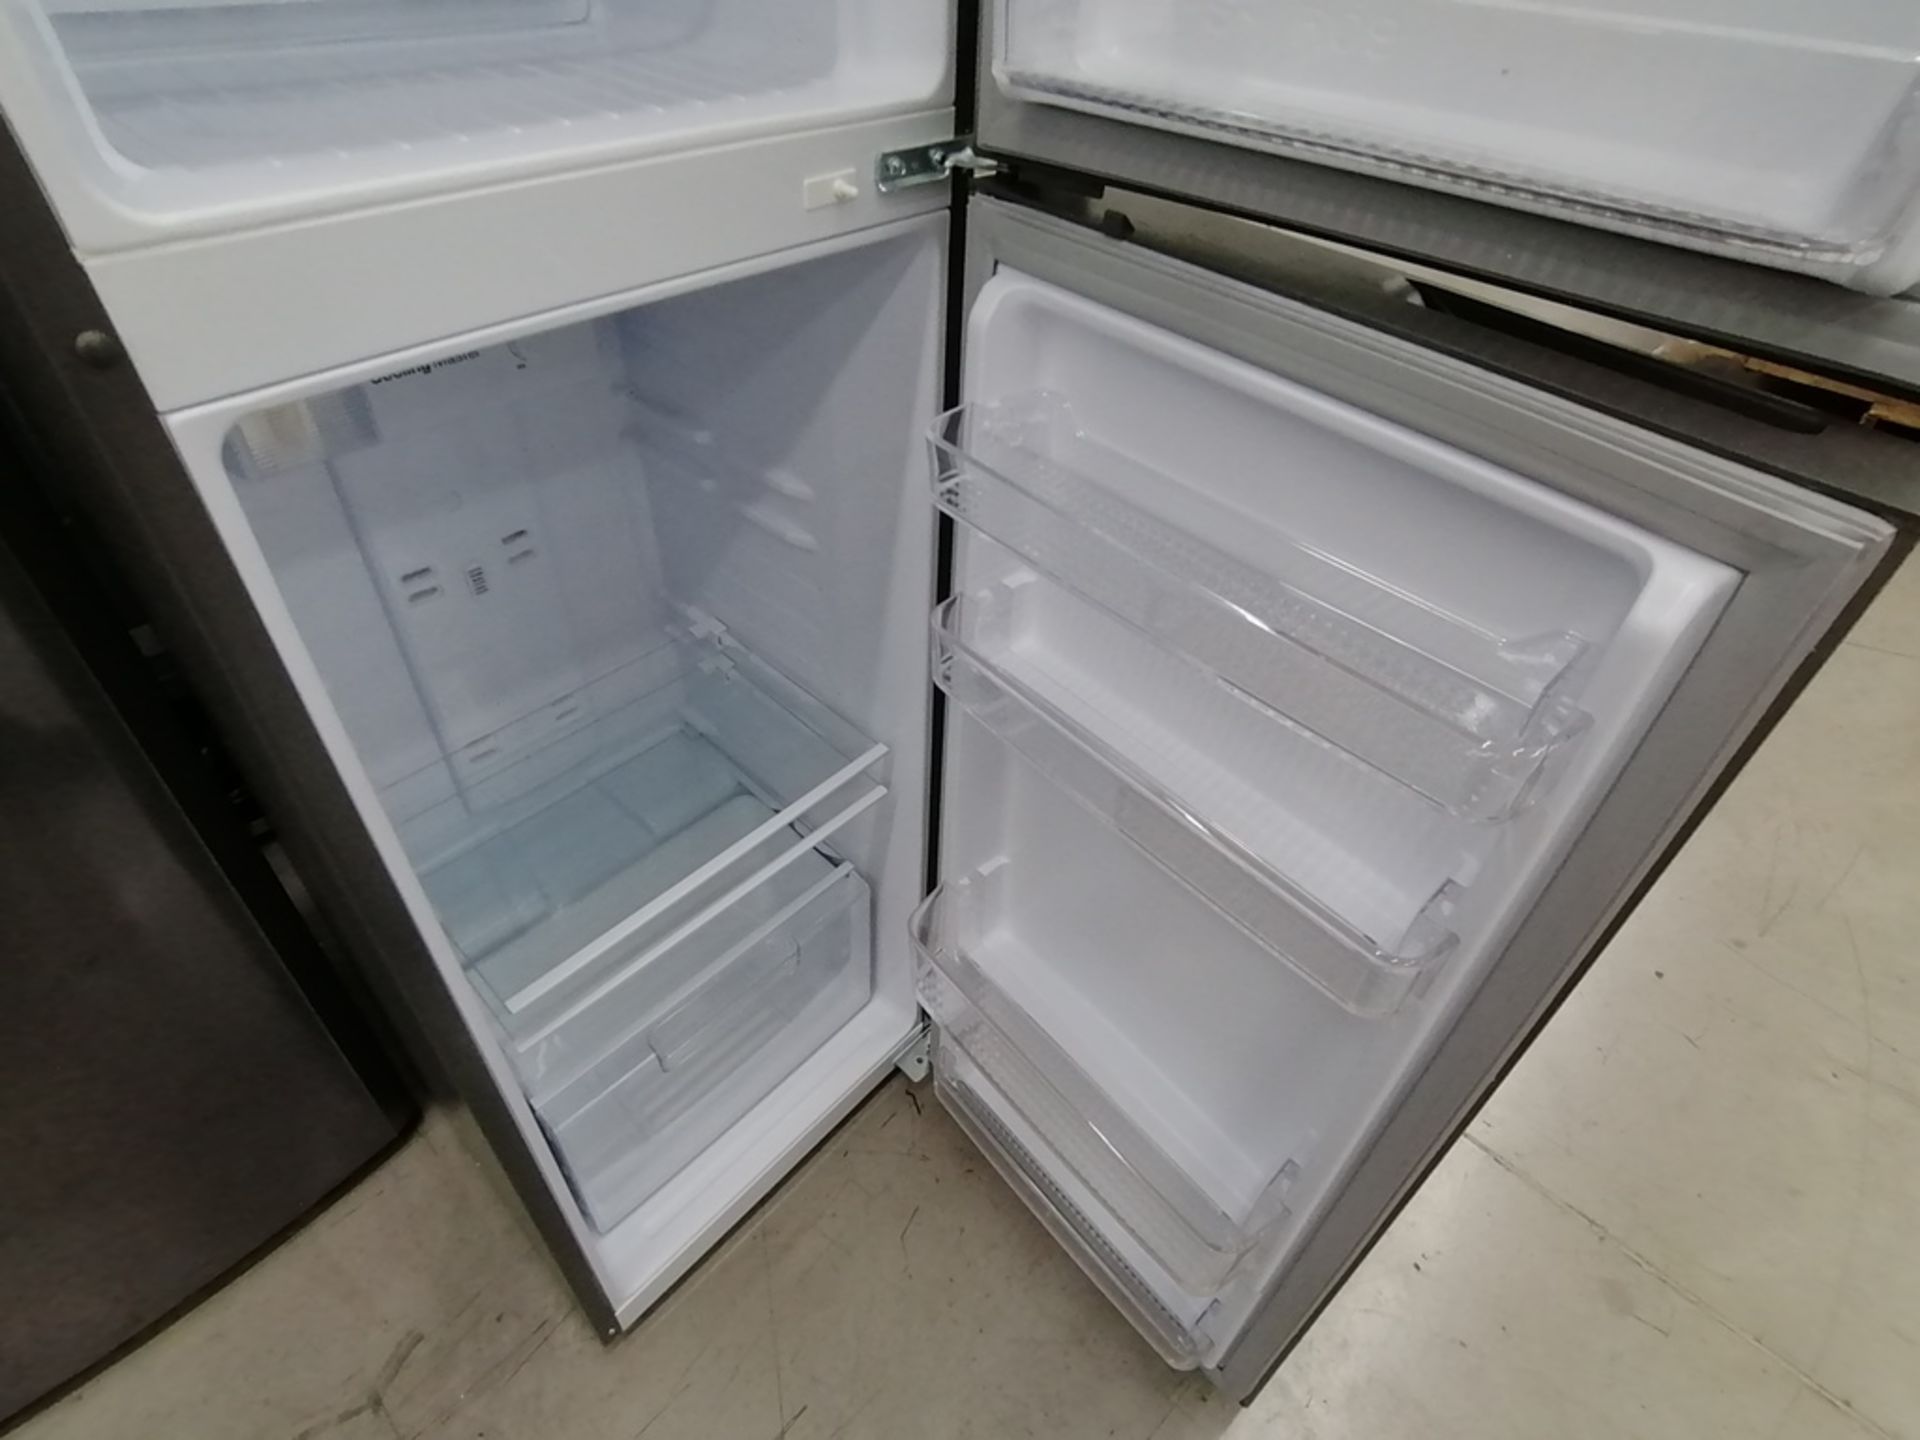 Lote de 2 refrigeradores incluye: 1 Refrigerador, Marca Mabe, Modelo RMA1025VNX, Serie 2110B623189, - Image 16 of 17